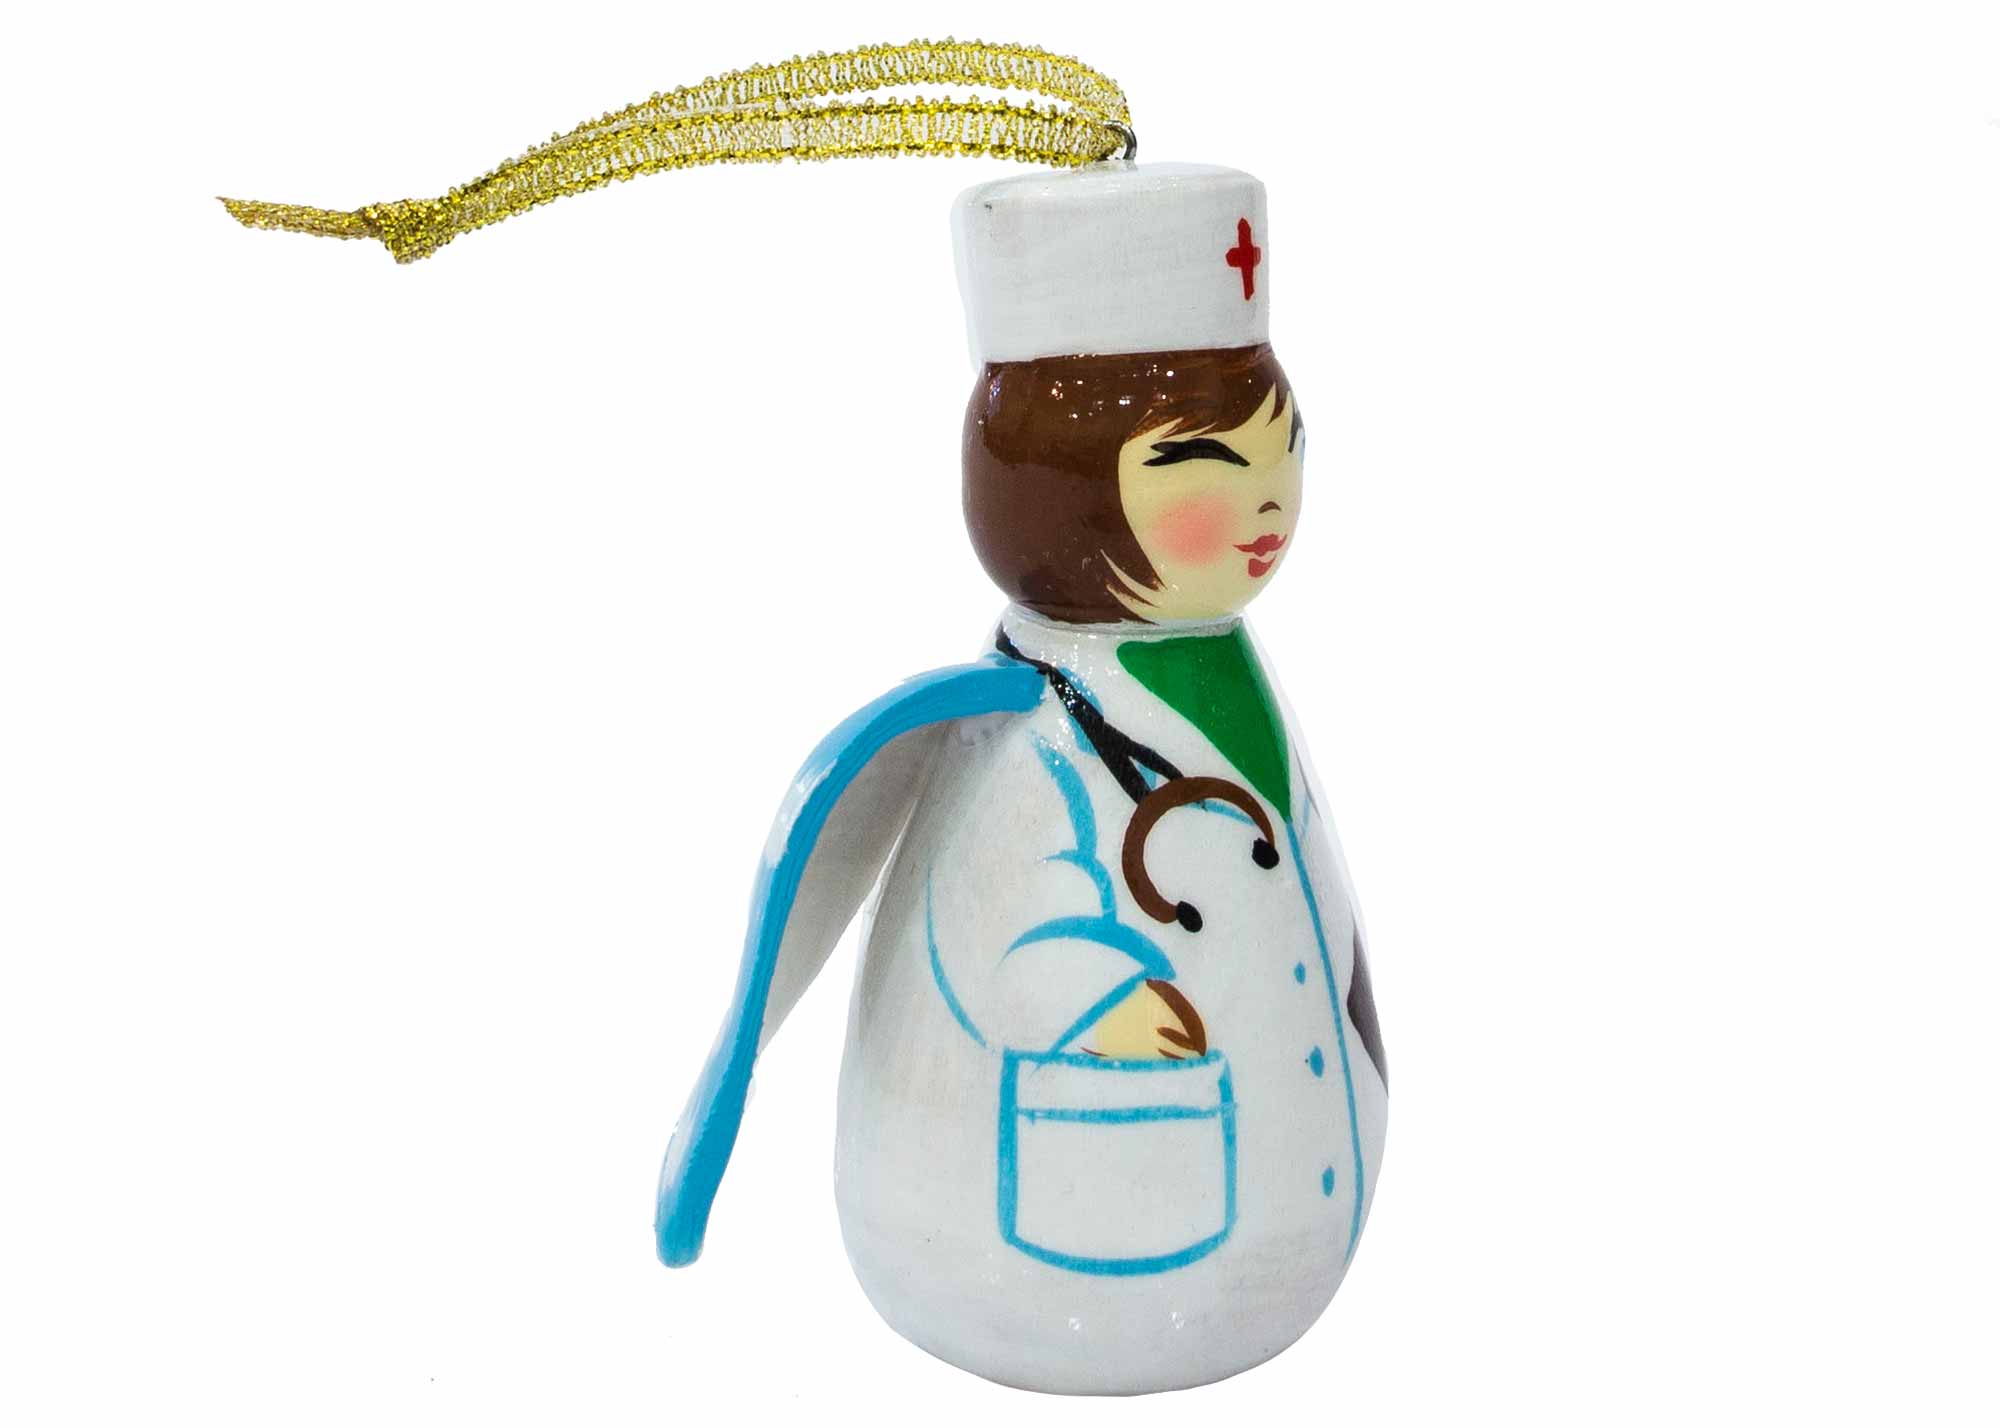 Buy Nurse Angel Ornament, 3" at GoldenCockerel.com